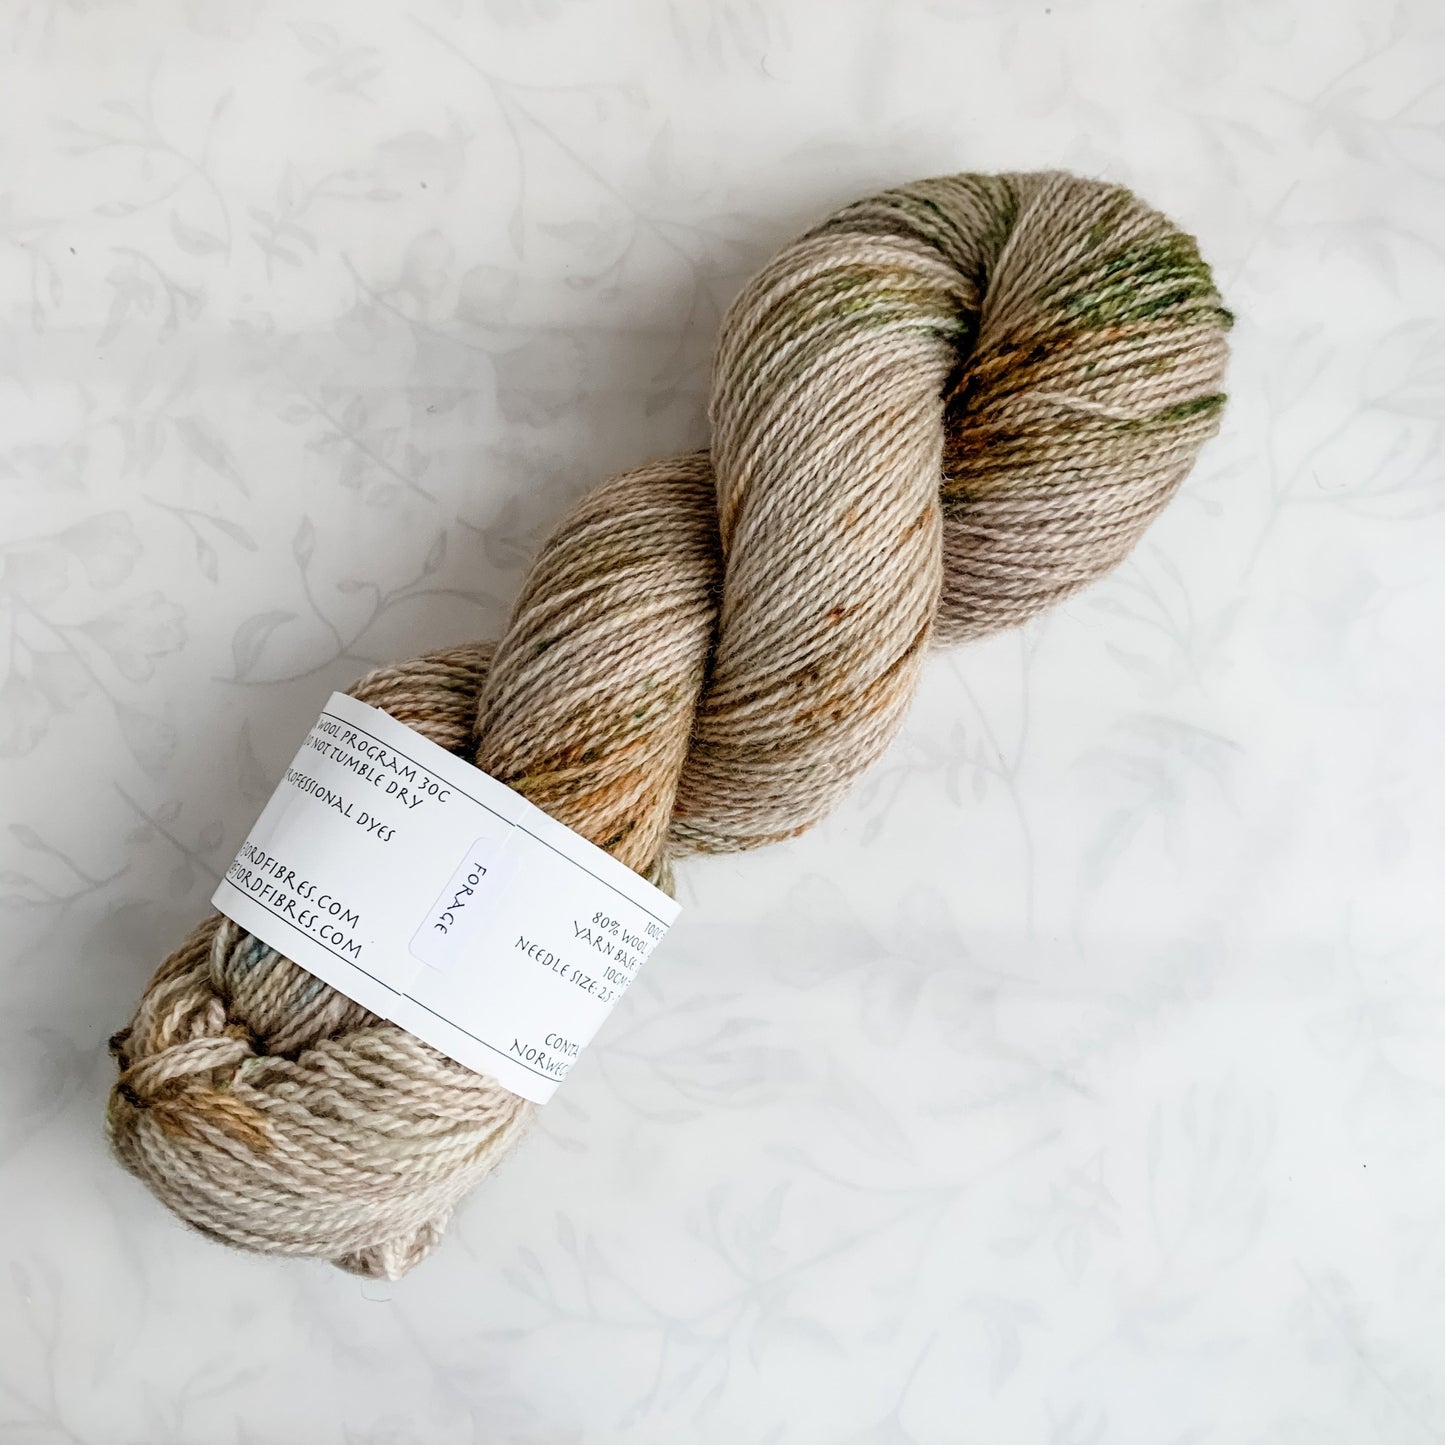 Forage - Trollfjord sock - Hand Dyed Yarn - Variegated Yarn